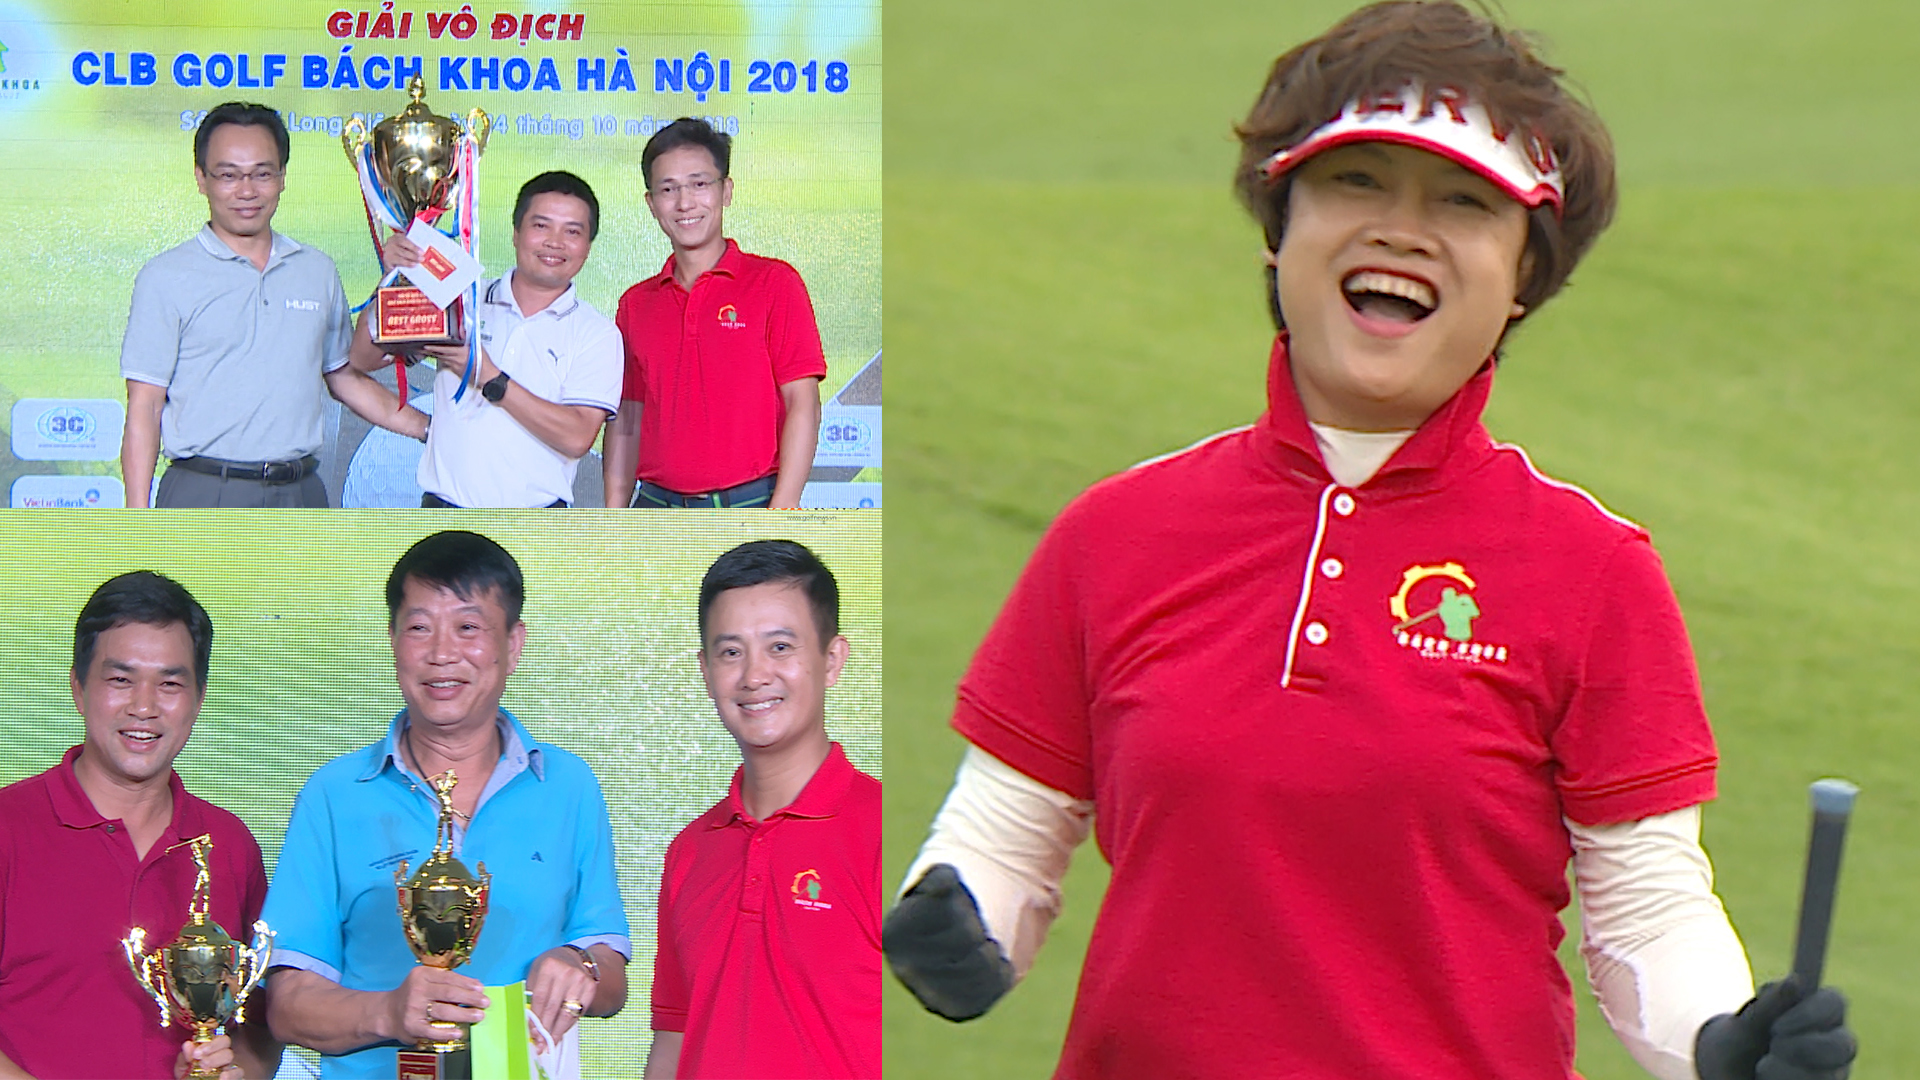 Tổng kết Giải vô địch CLB Golf Bách Khoa Hà Nội 2018